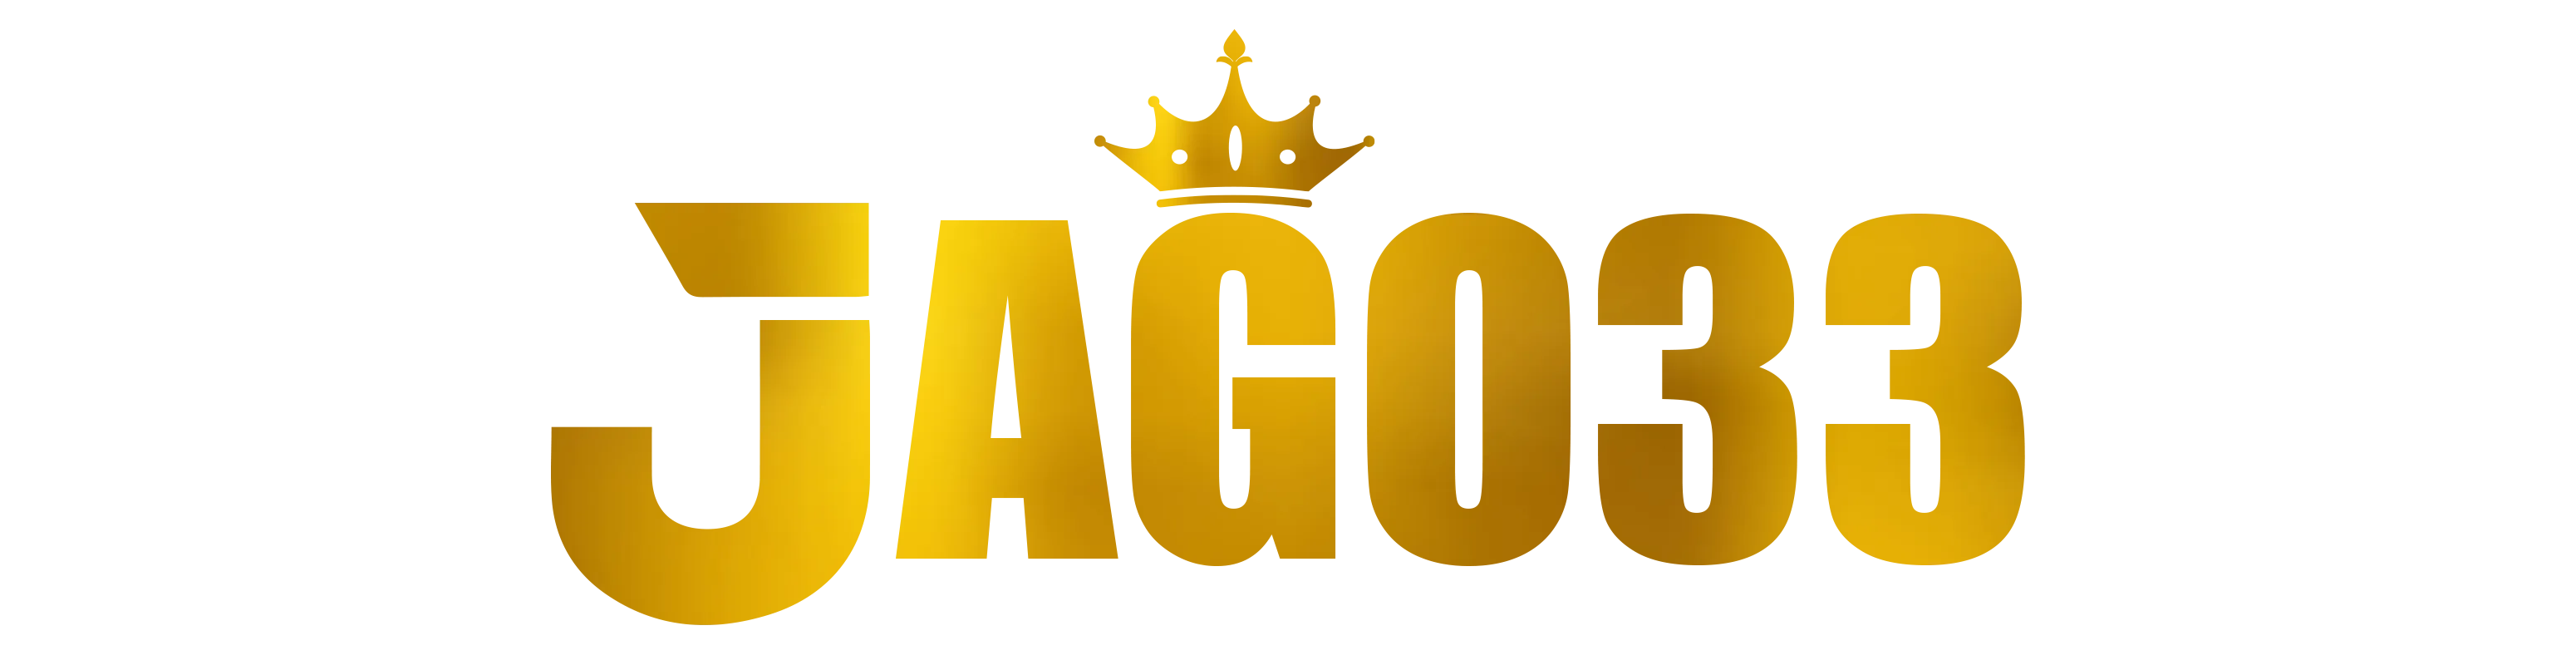 Jago33